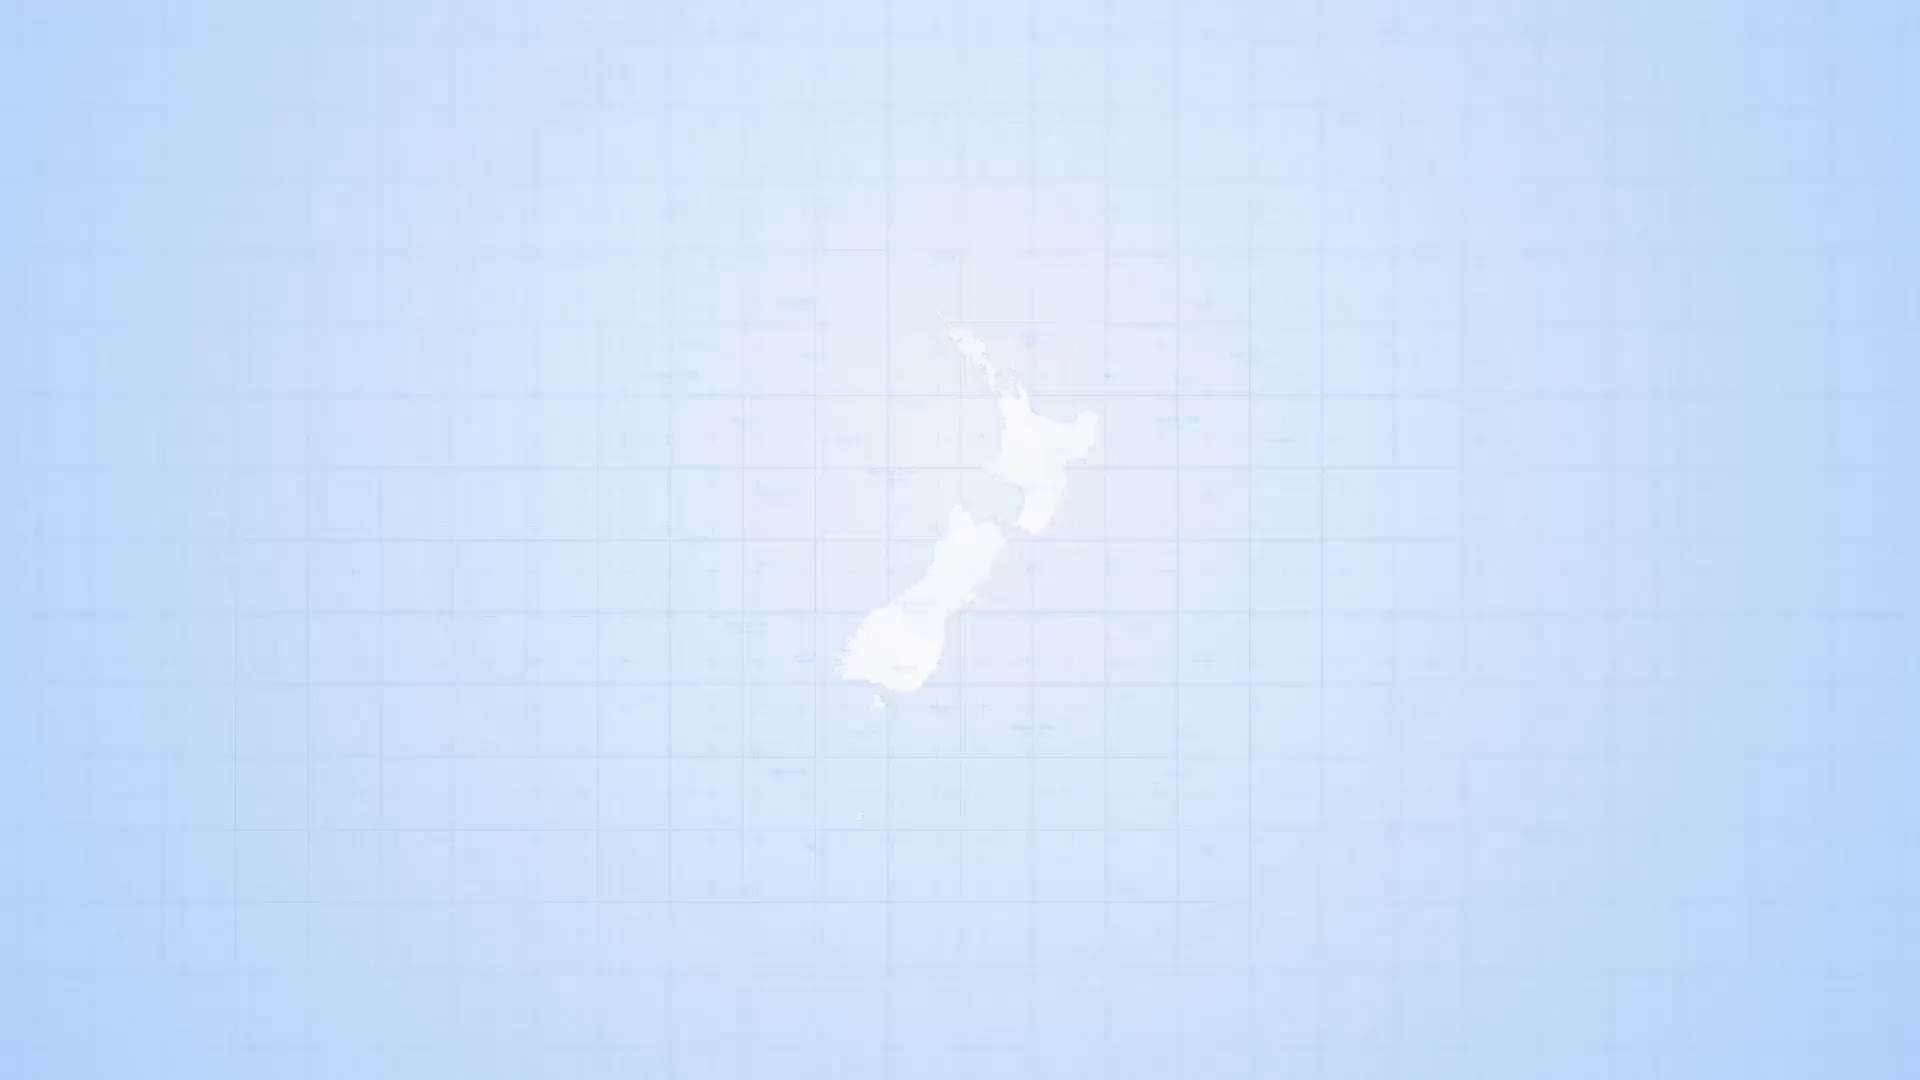 AE模板 | 新西兰地图旅游国际新闻路线标记工具包动态动画展示